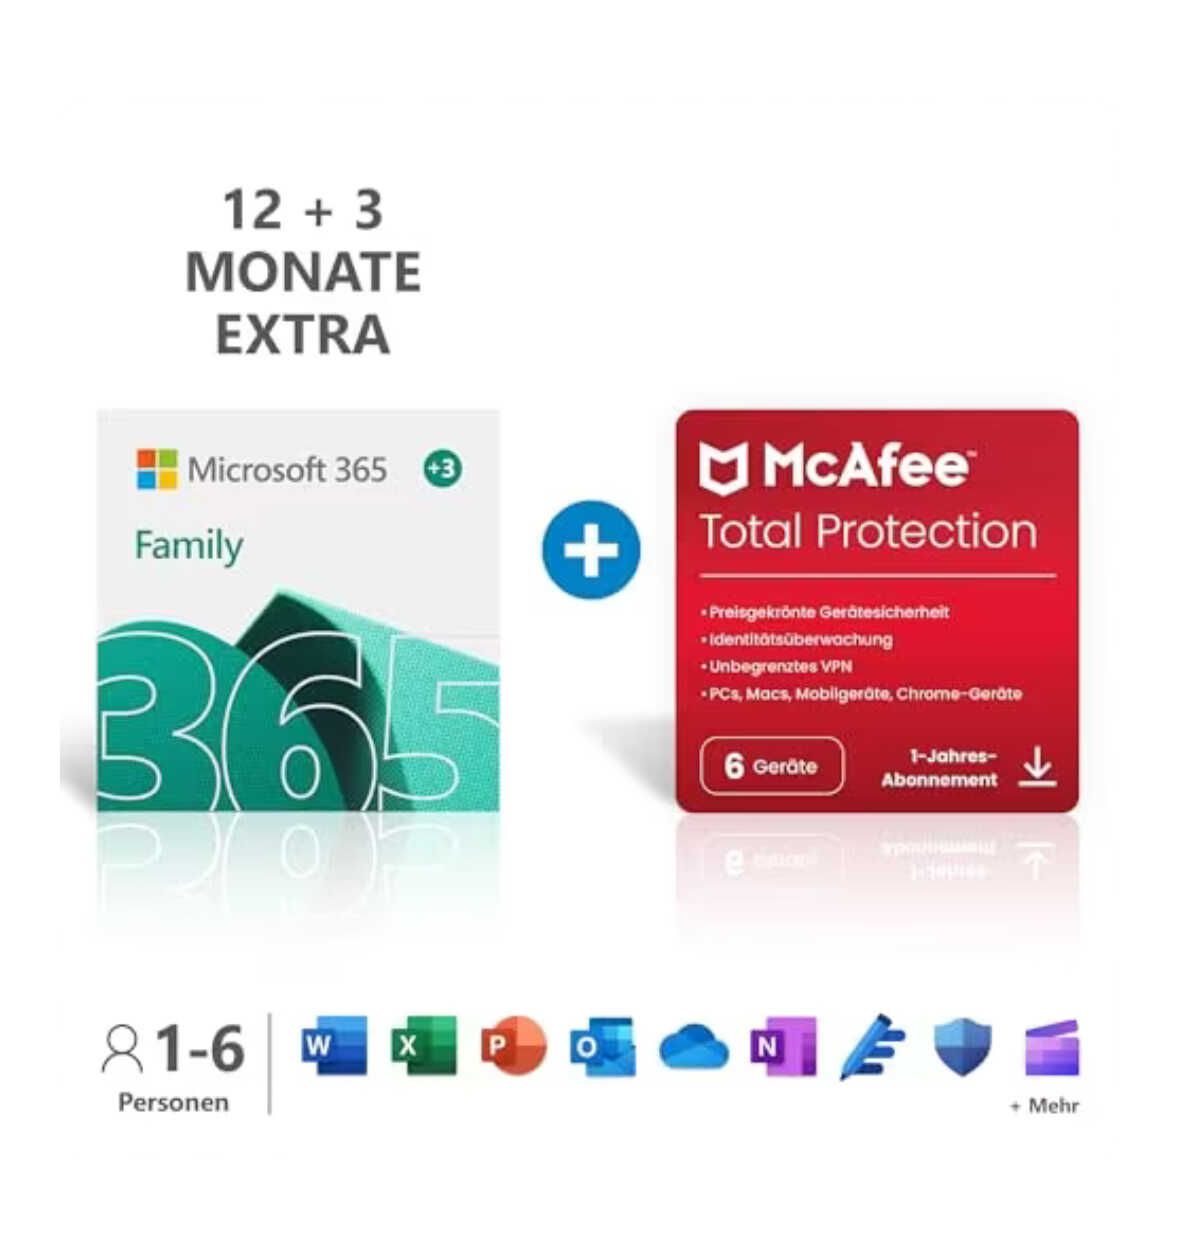 Microsoft 365 Family + McAfee/Norton für 15 Monate  für 53,99€ PVG 68,98€